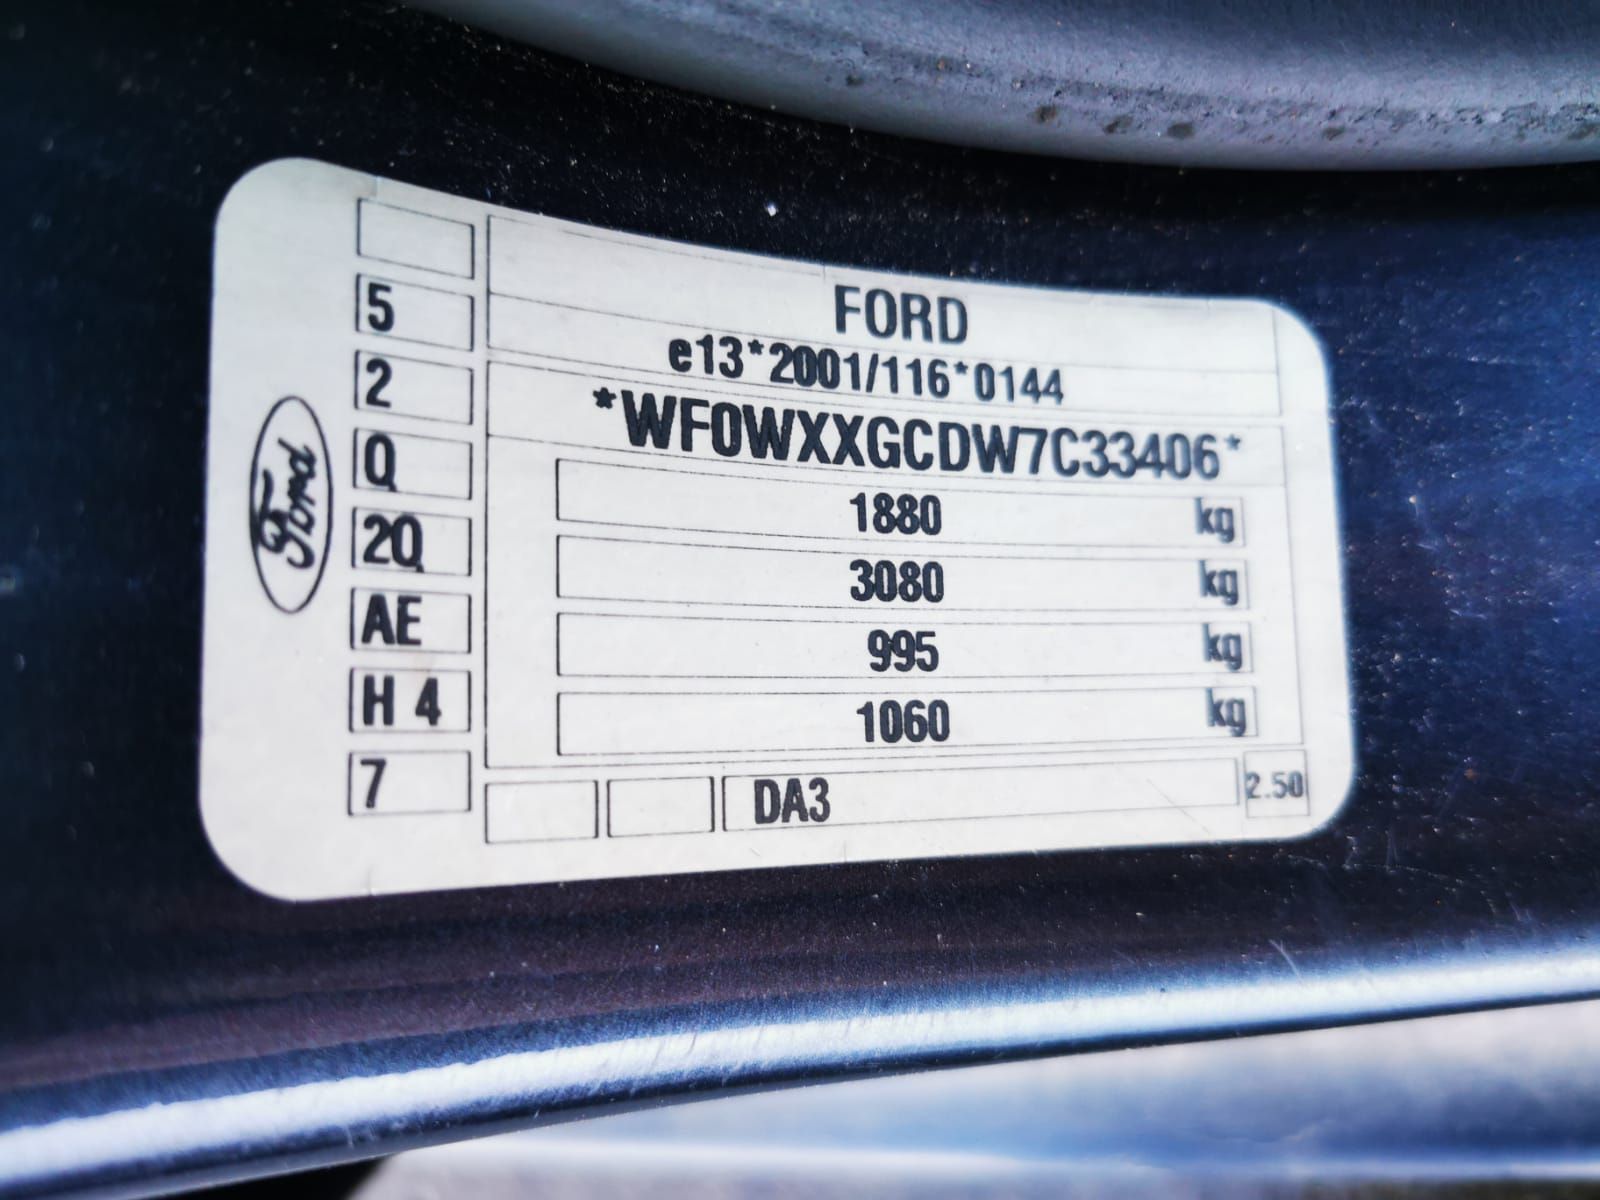 Б/У 1559586 Кнопка обогрева заднего стекла Ford Focus 2 (2004-2011)  Проверочный срок устанавливаетс bu6a1846349 Б/У запчасти